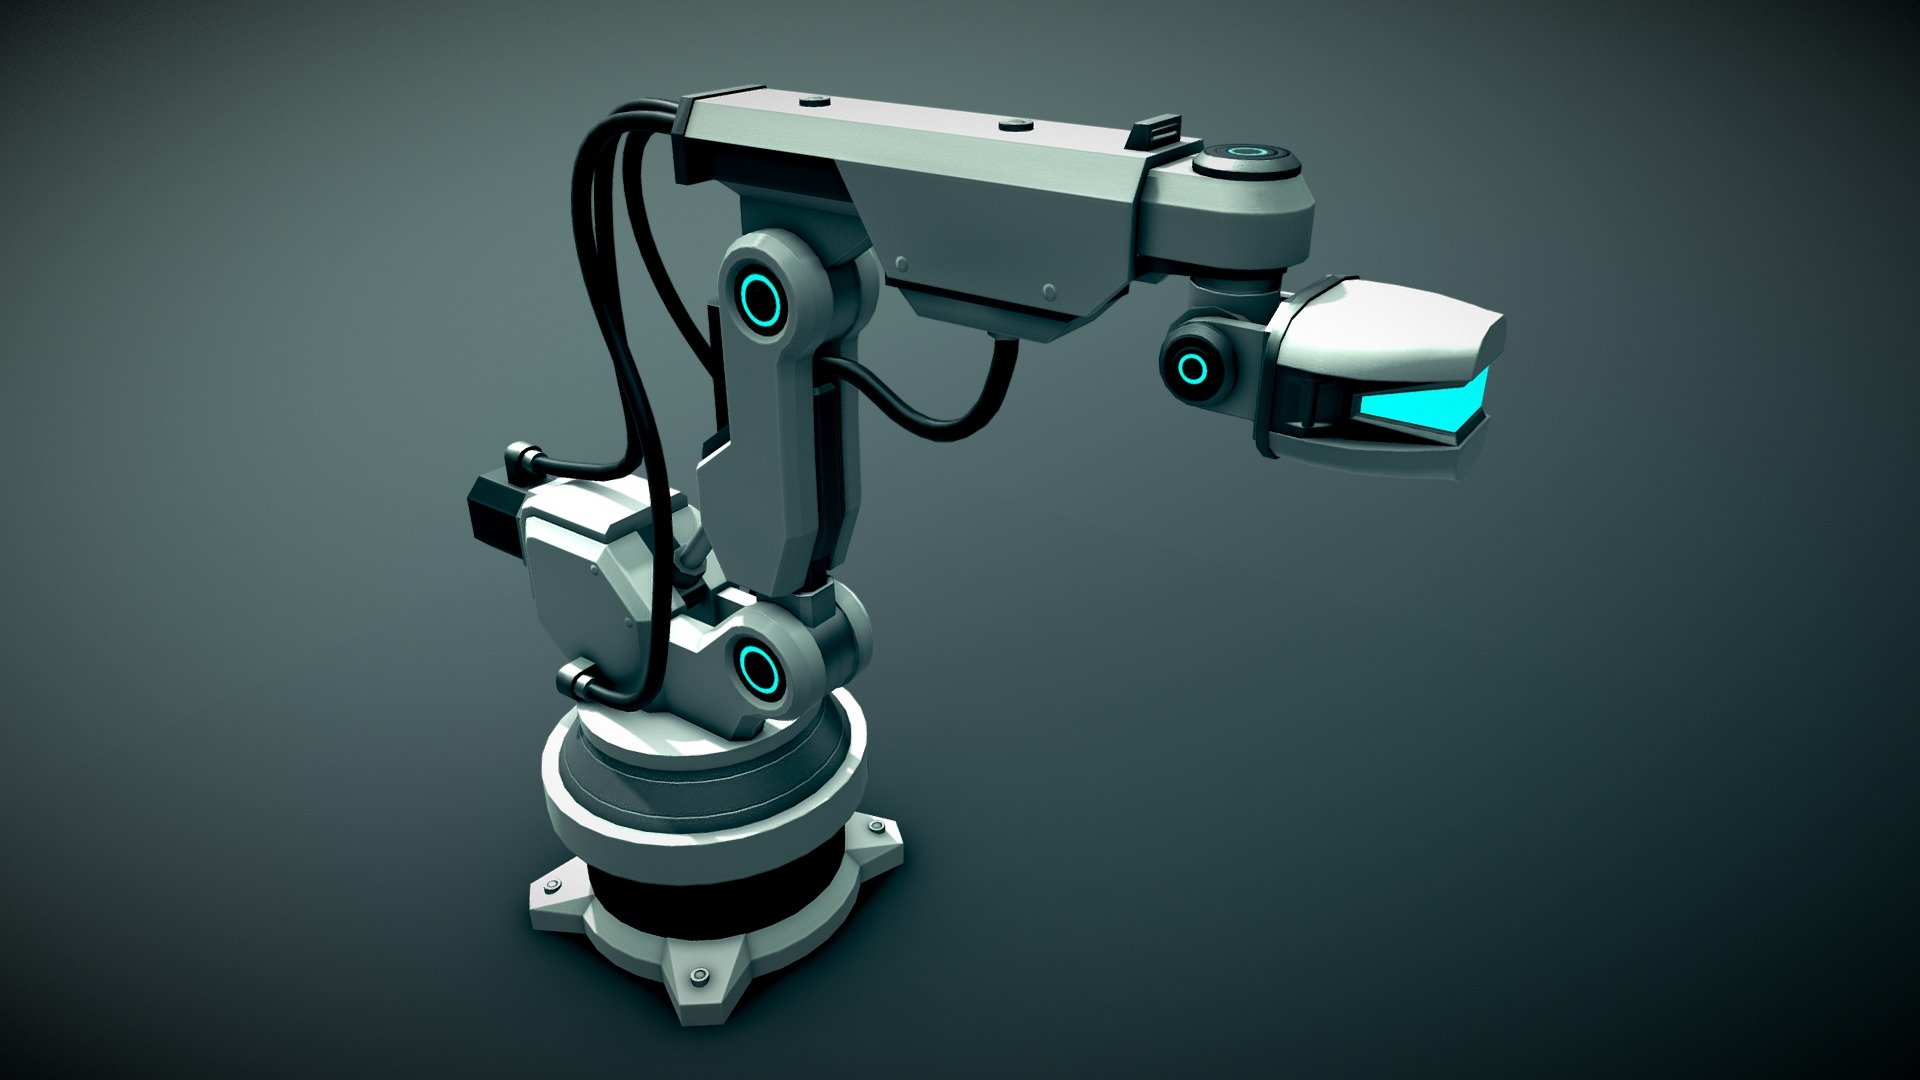 Roboticarm 3D models - Sketchfab